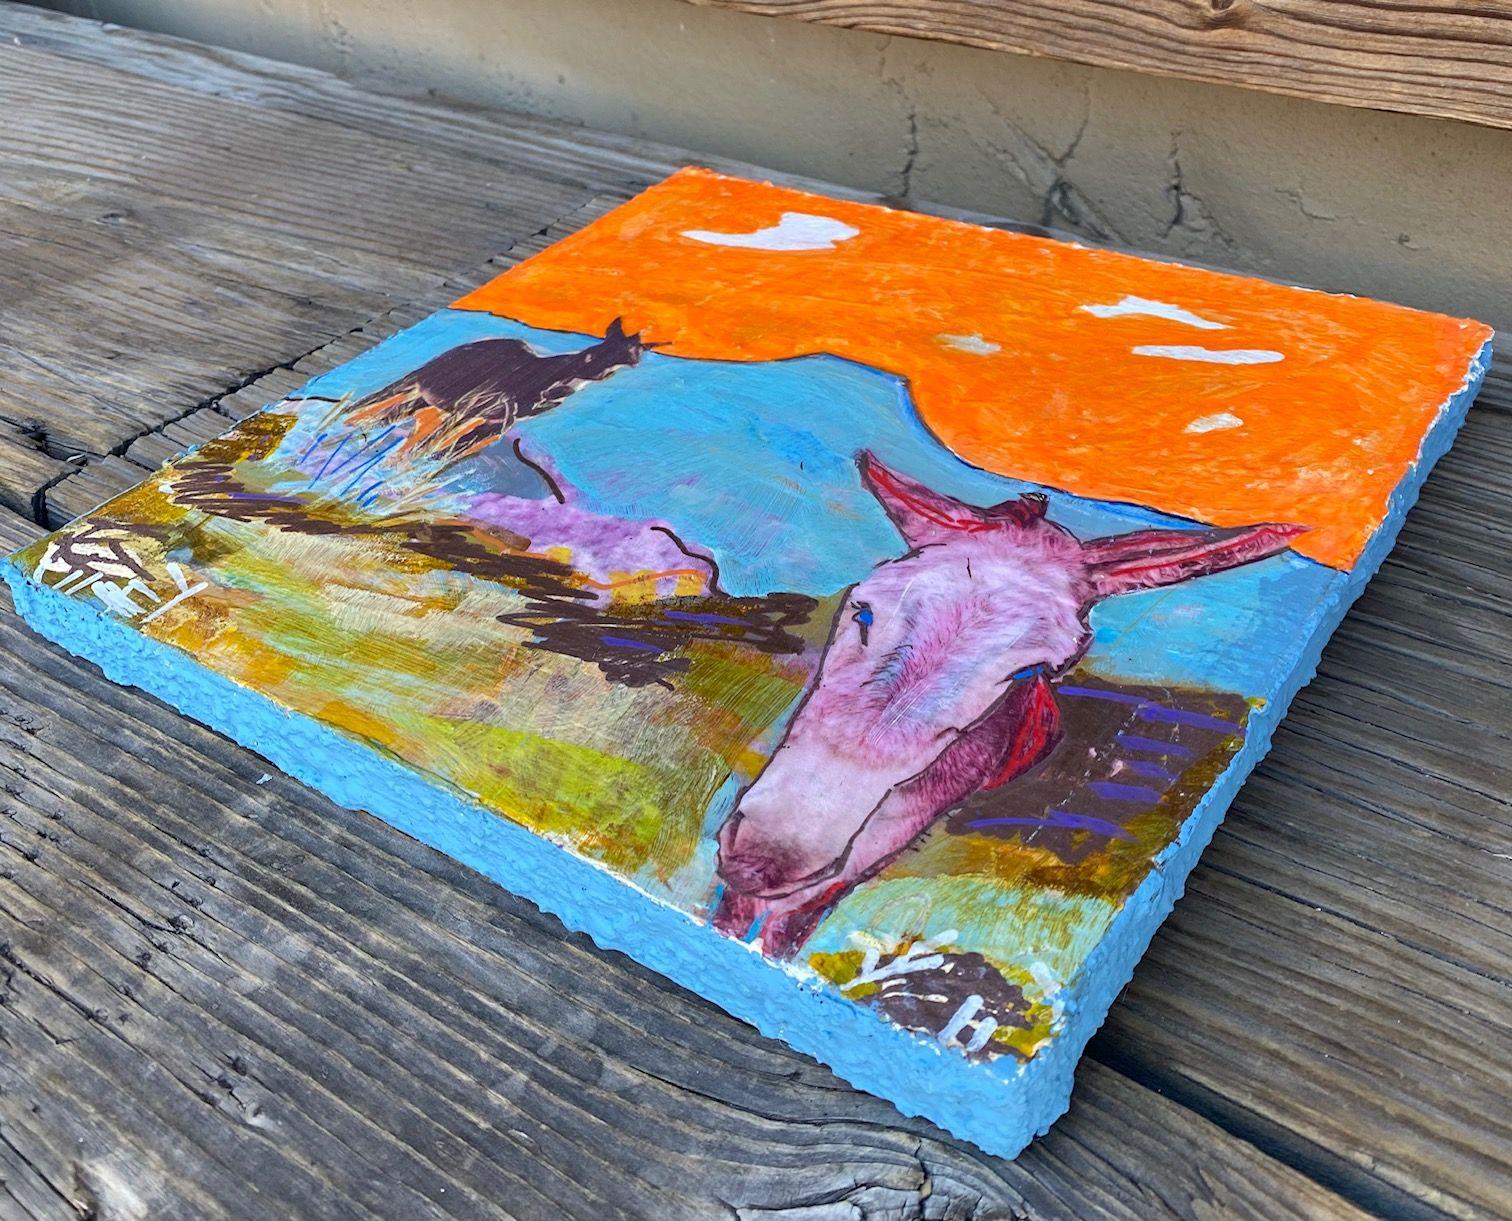 2 Burros, Orange Sky, Mixed Media on Wood Panel - Contemporary Mixed Media Art by Mickey bond